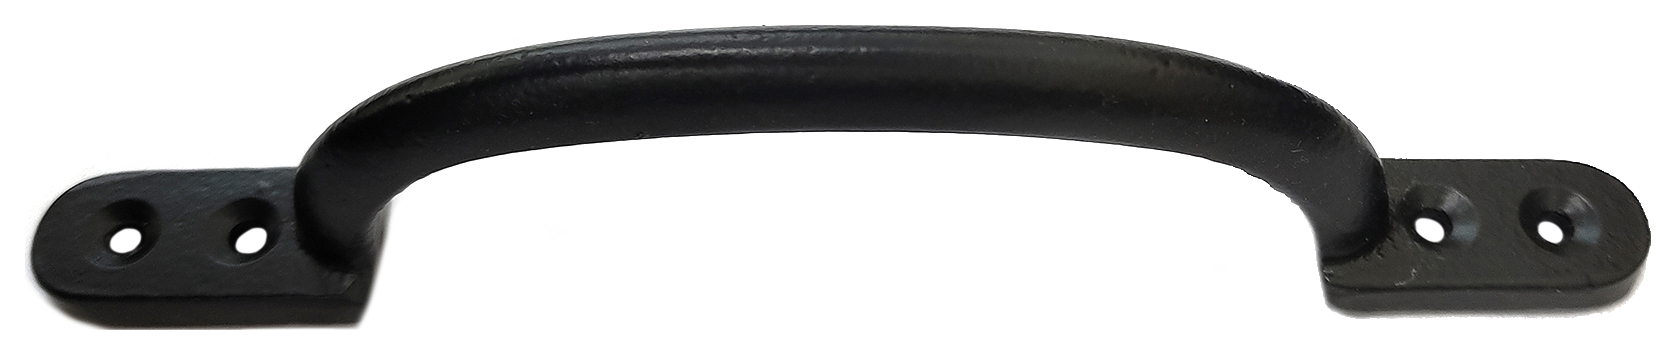 Wickes Bow Pull Door Handle - Black 178mm